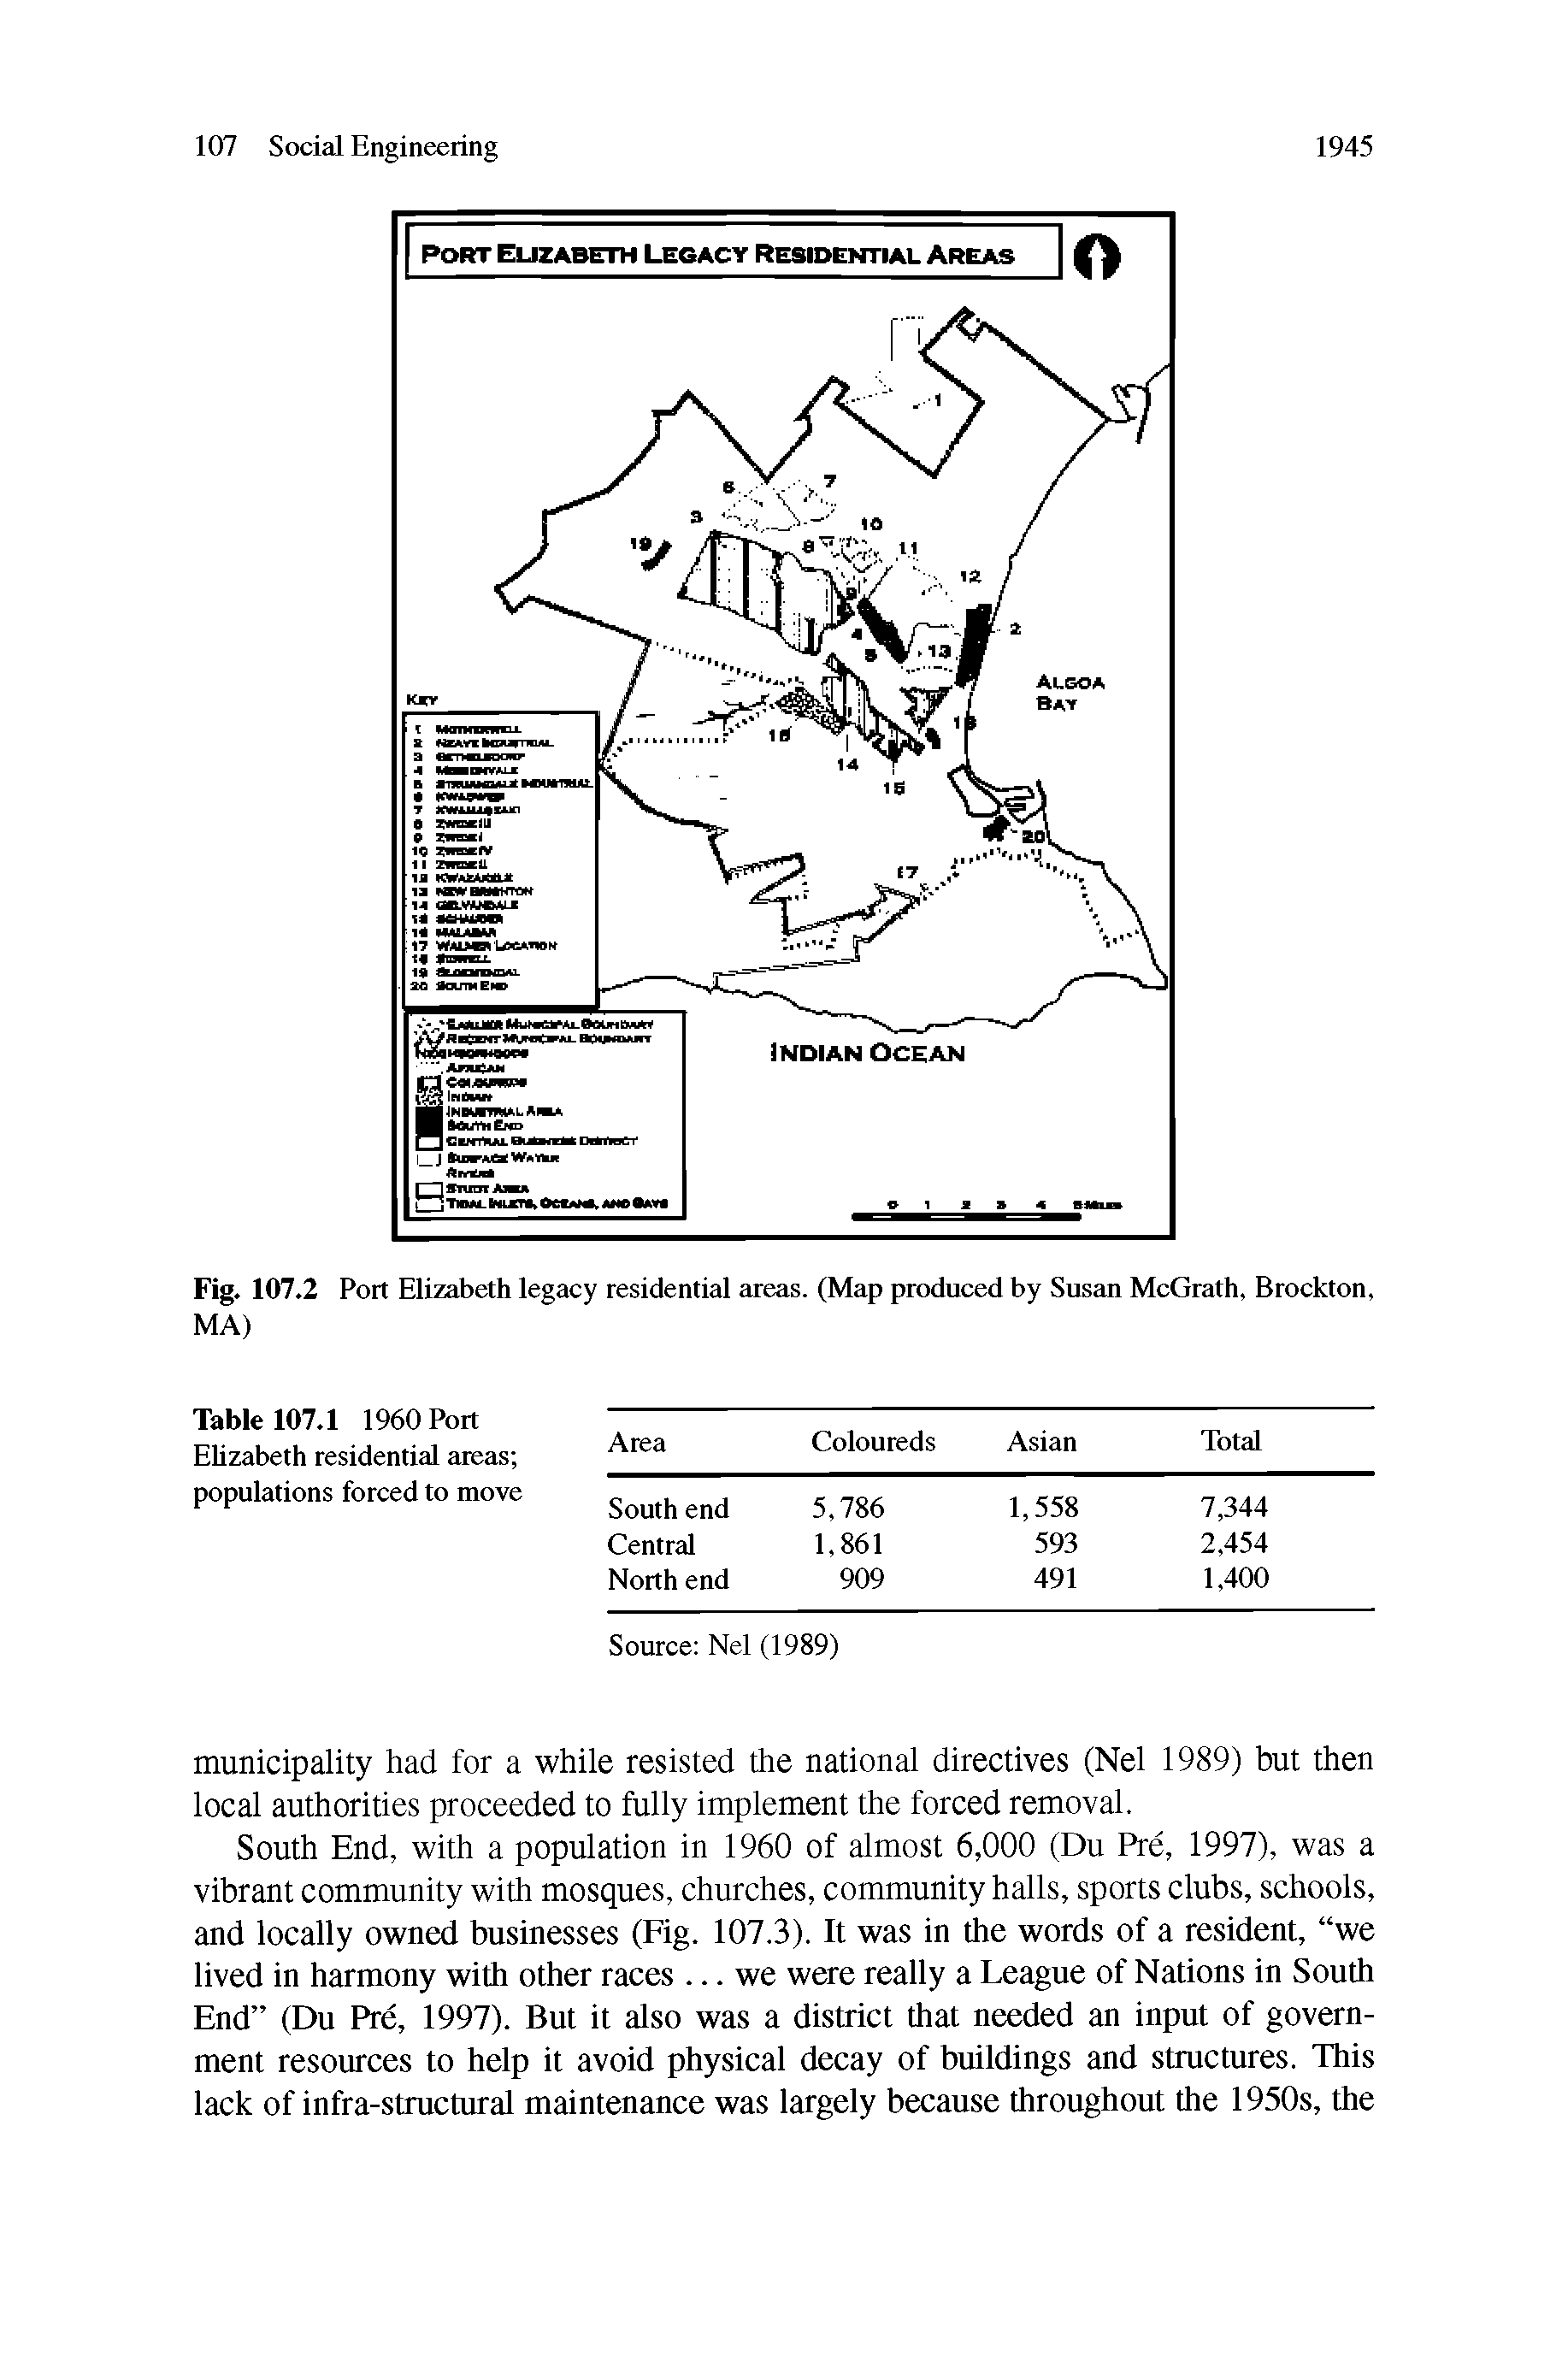 Fig. 107.2 Port Elizabeth legacy residential areas. (Map produced by Susan McGrath, Brockton, MA)...